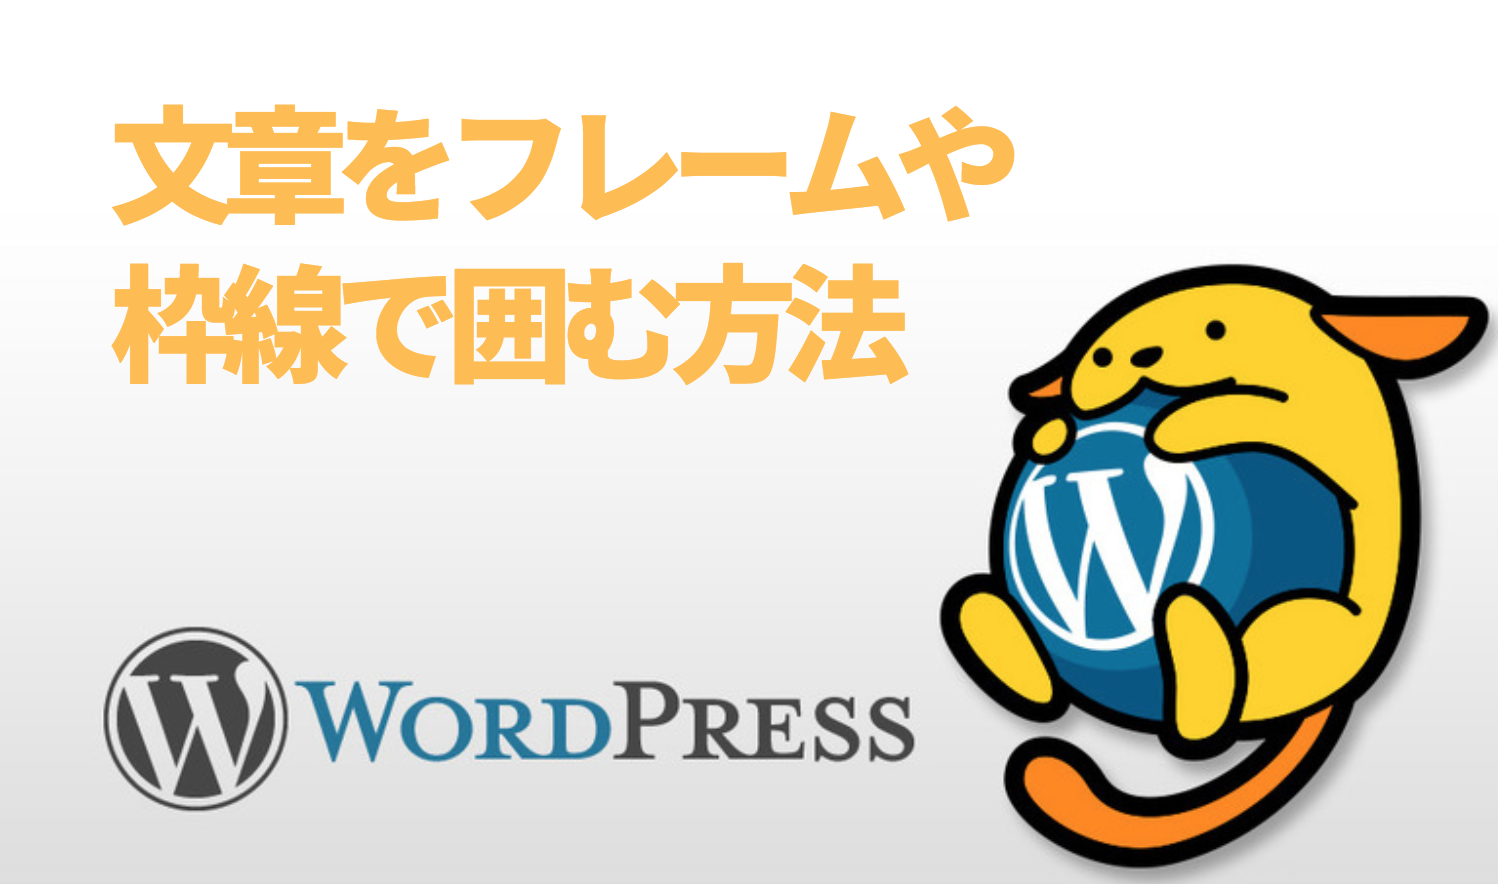 WordPressフレーム枠線